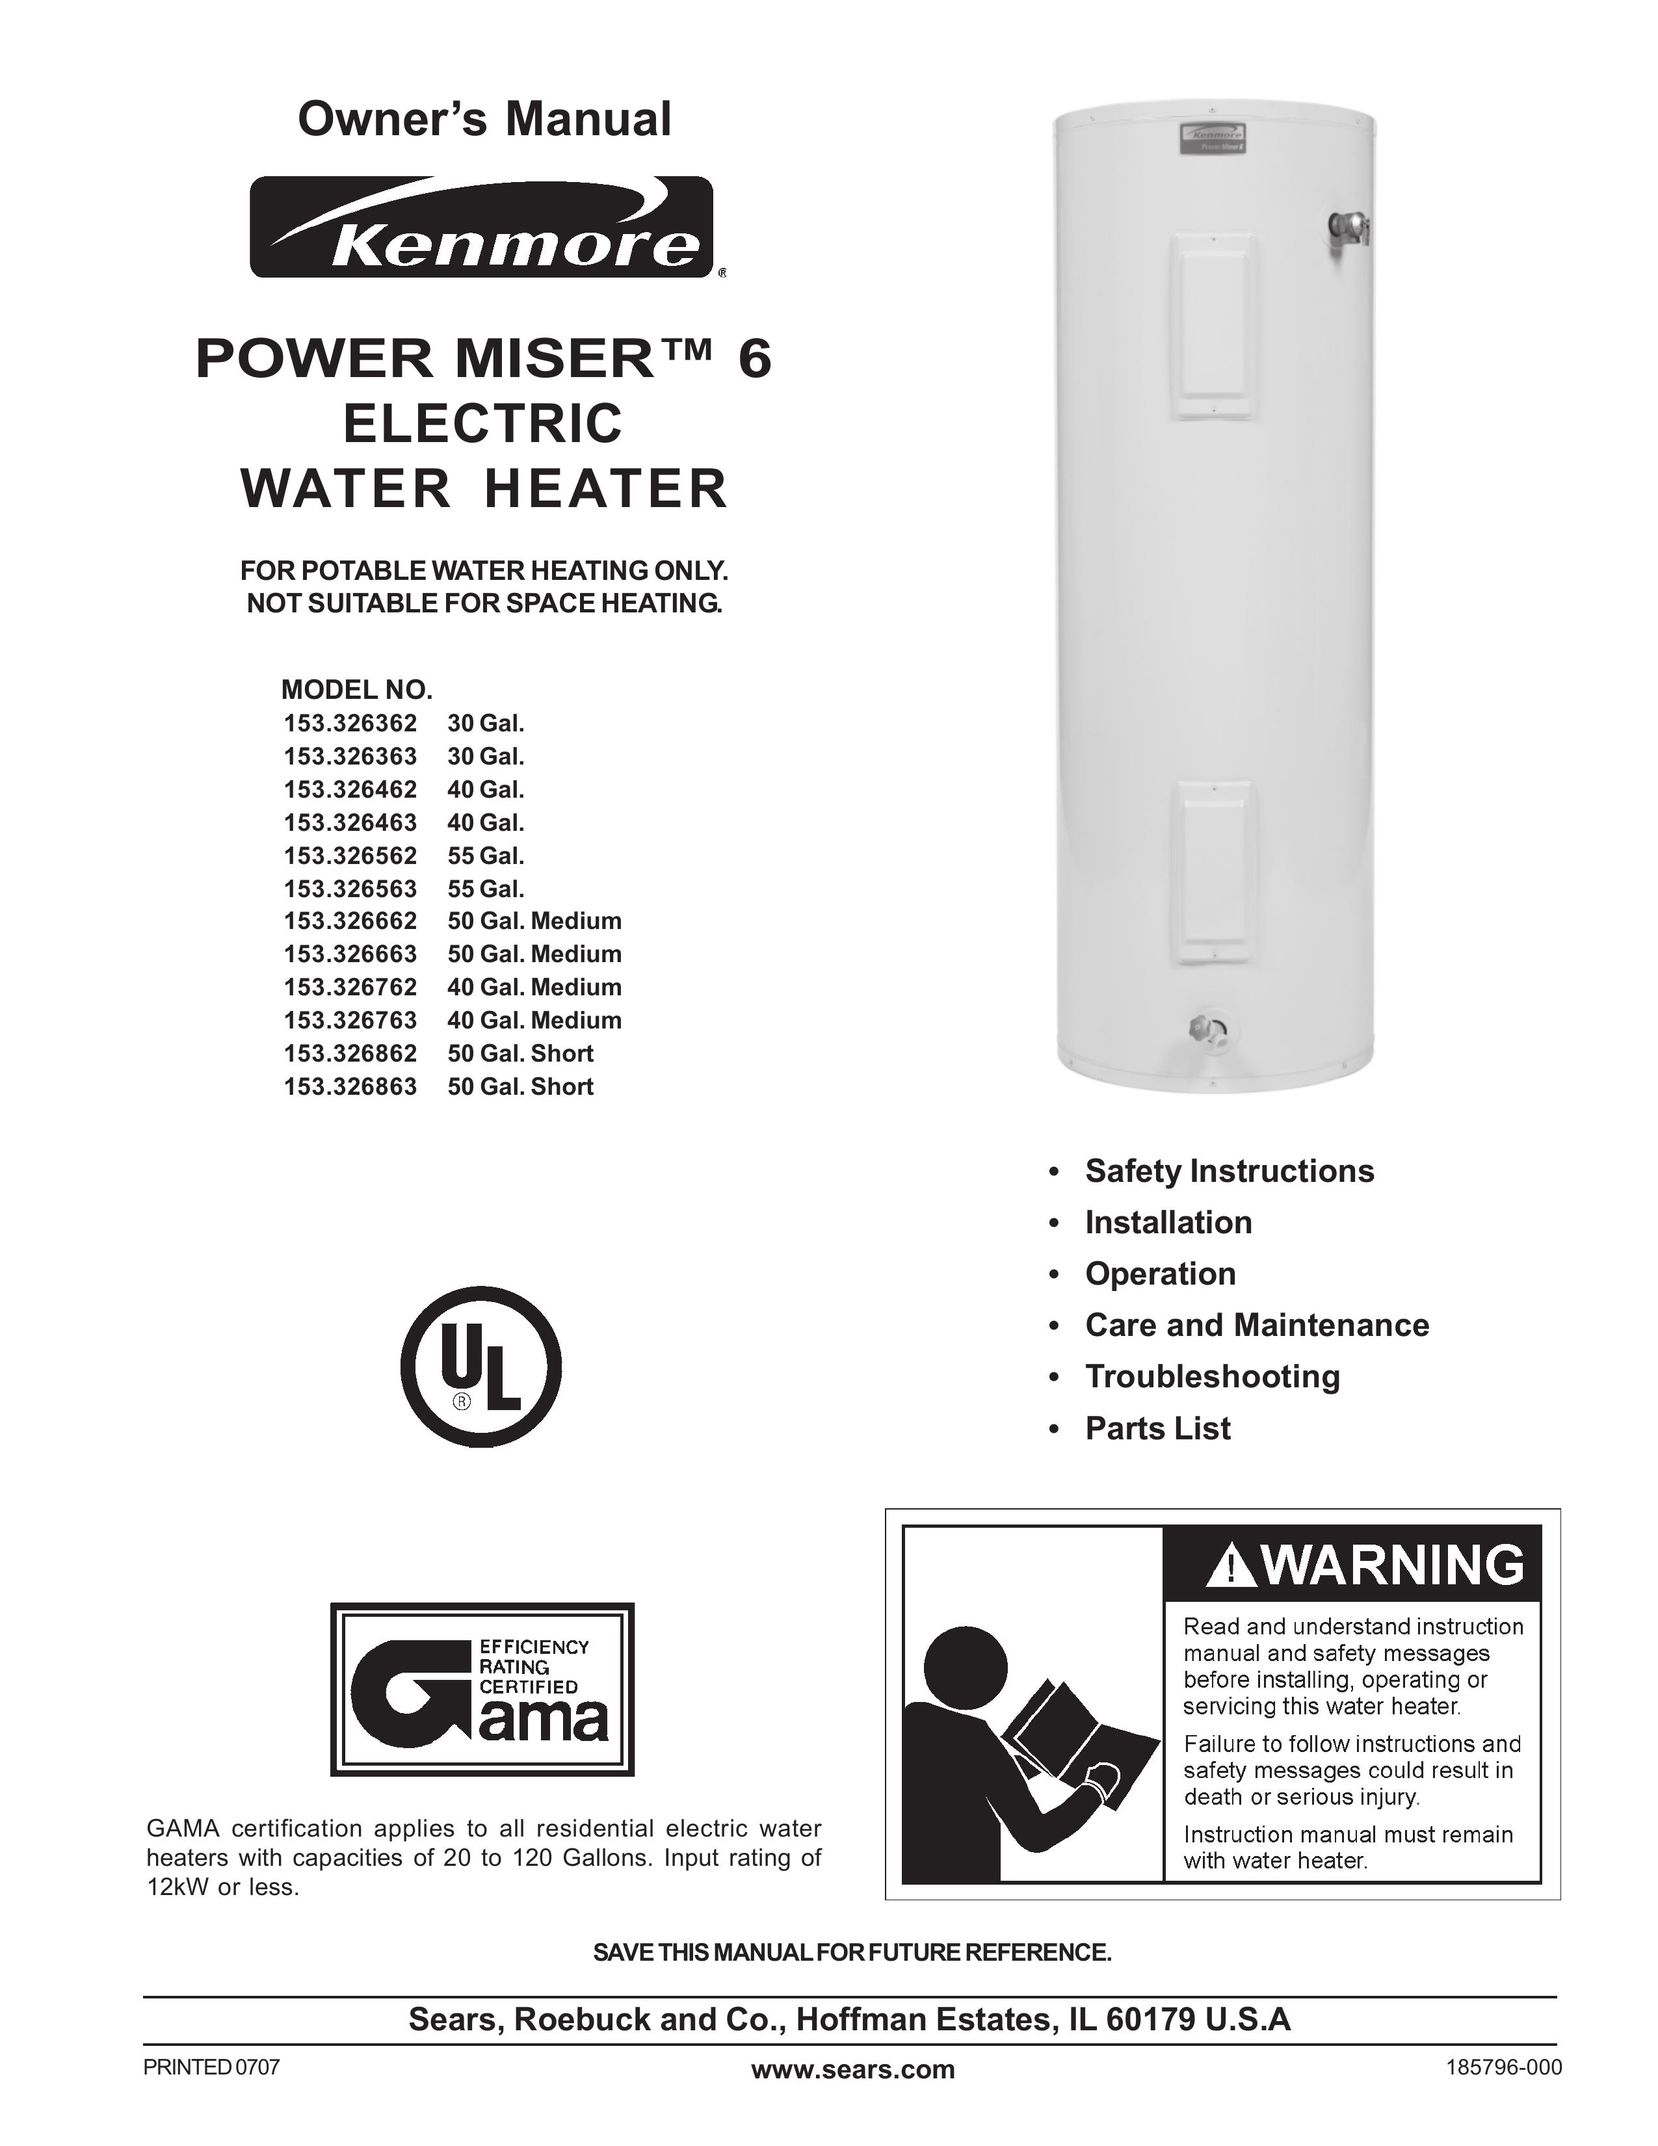 Sears 153.326763 40 GAL. MEDIUM Water Heater User Manual